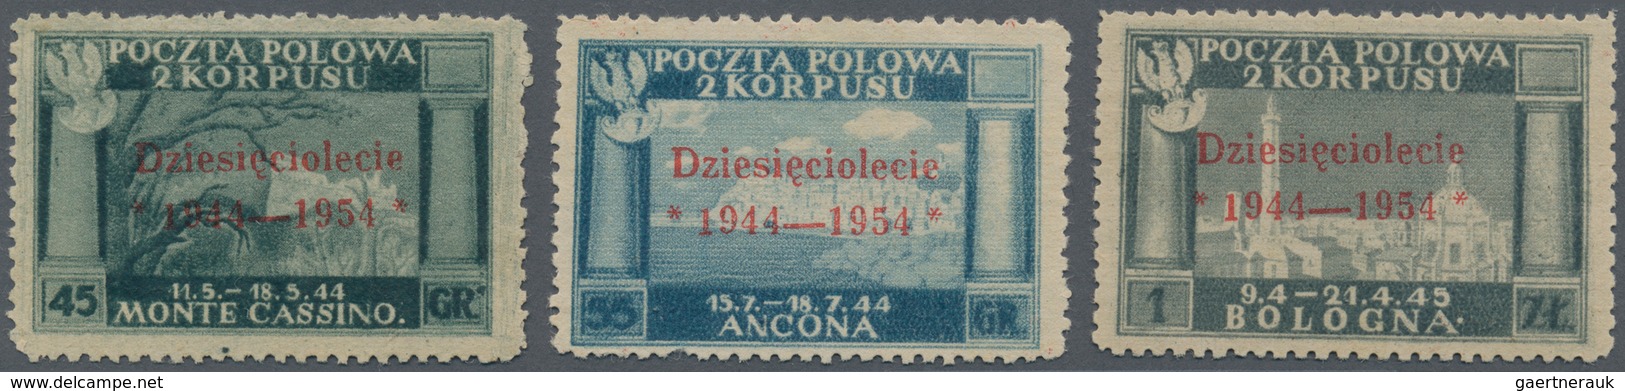 14787 Italien - Militärpostmarken: Feldpost: 1945, "POCZTA POLOWA 2. KORPUSU" 45 Gr., 55 Gr. And 1 Zt. Ove - Militärpost (MP)